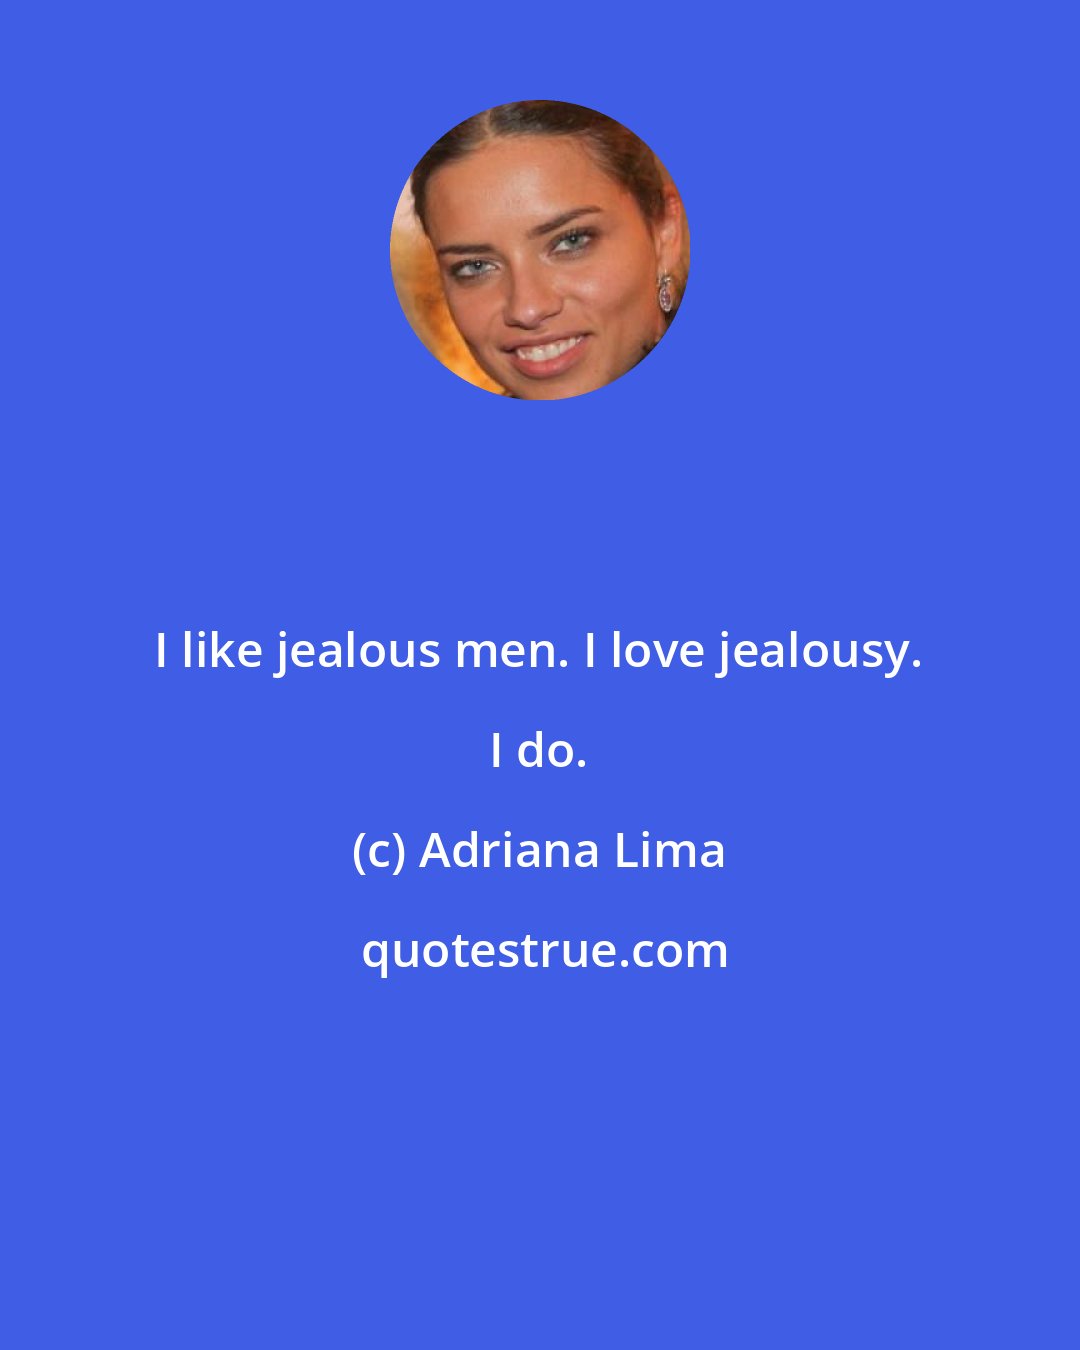 Adriana Lima: I like jealous men. I love jealousy. I do.